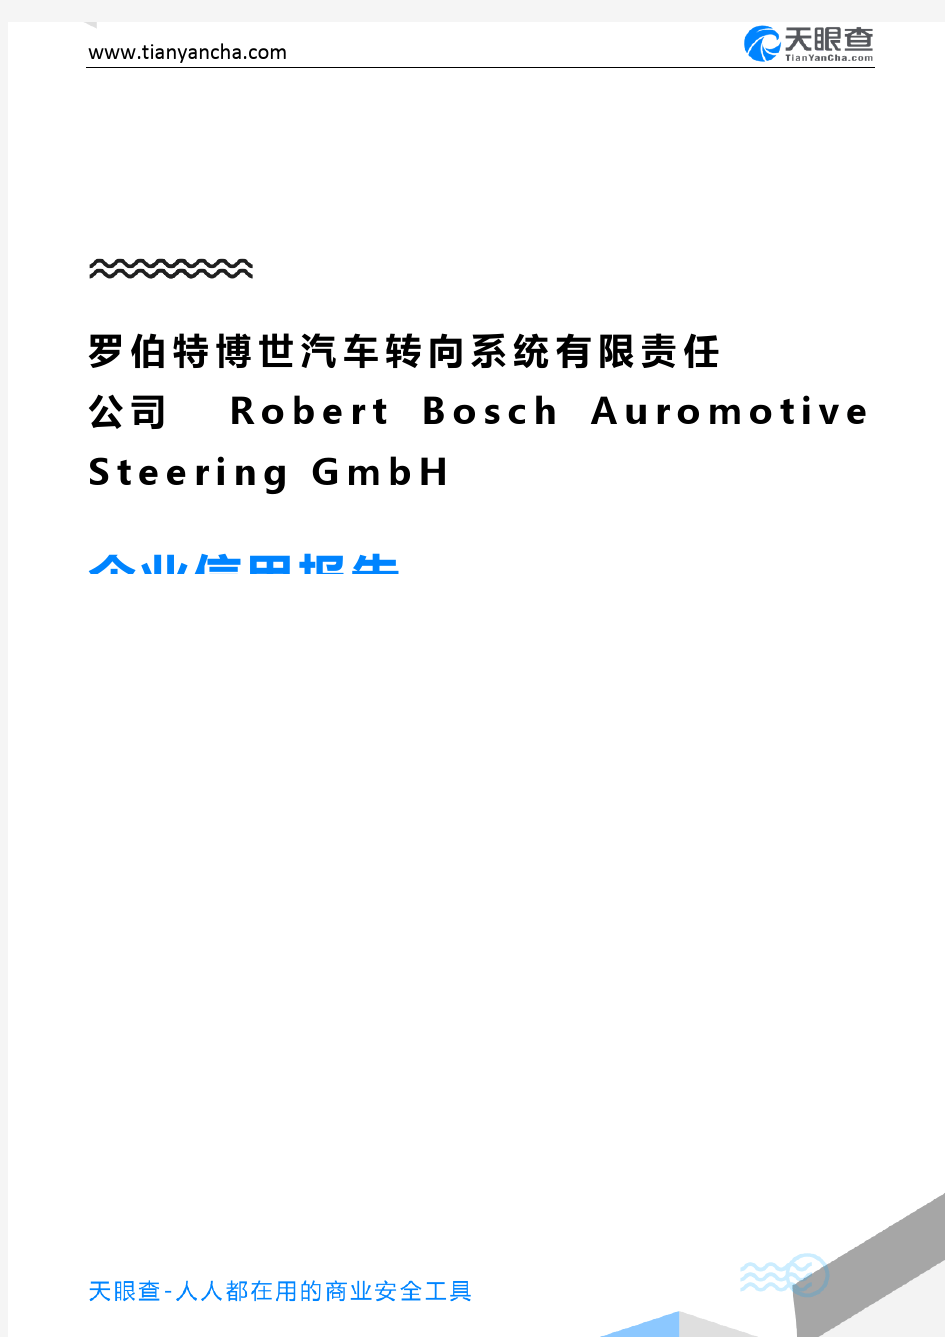 罗伯特博世汽车转向系统有限责任公司 Robert Bosch Auromotive Steering